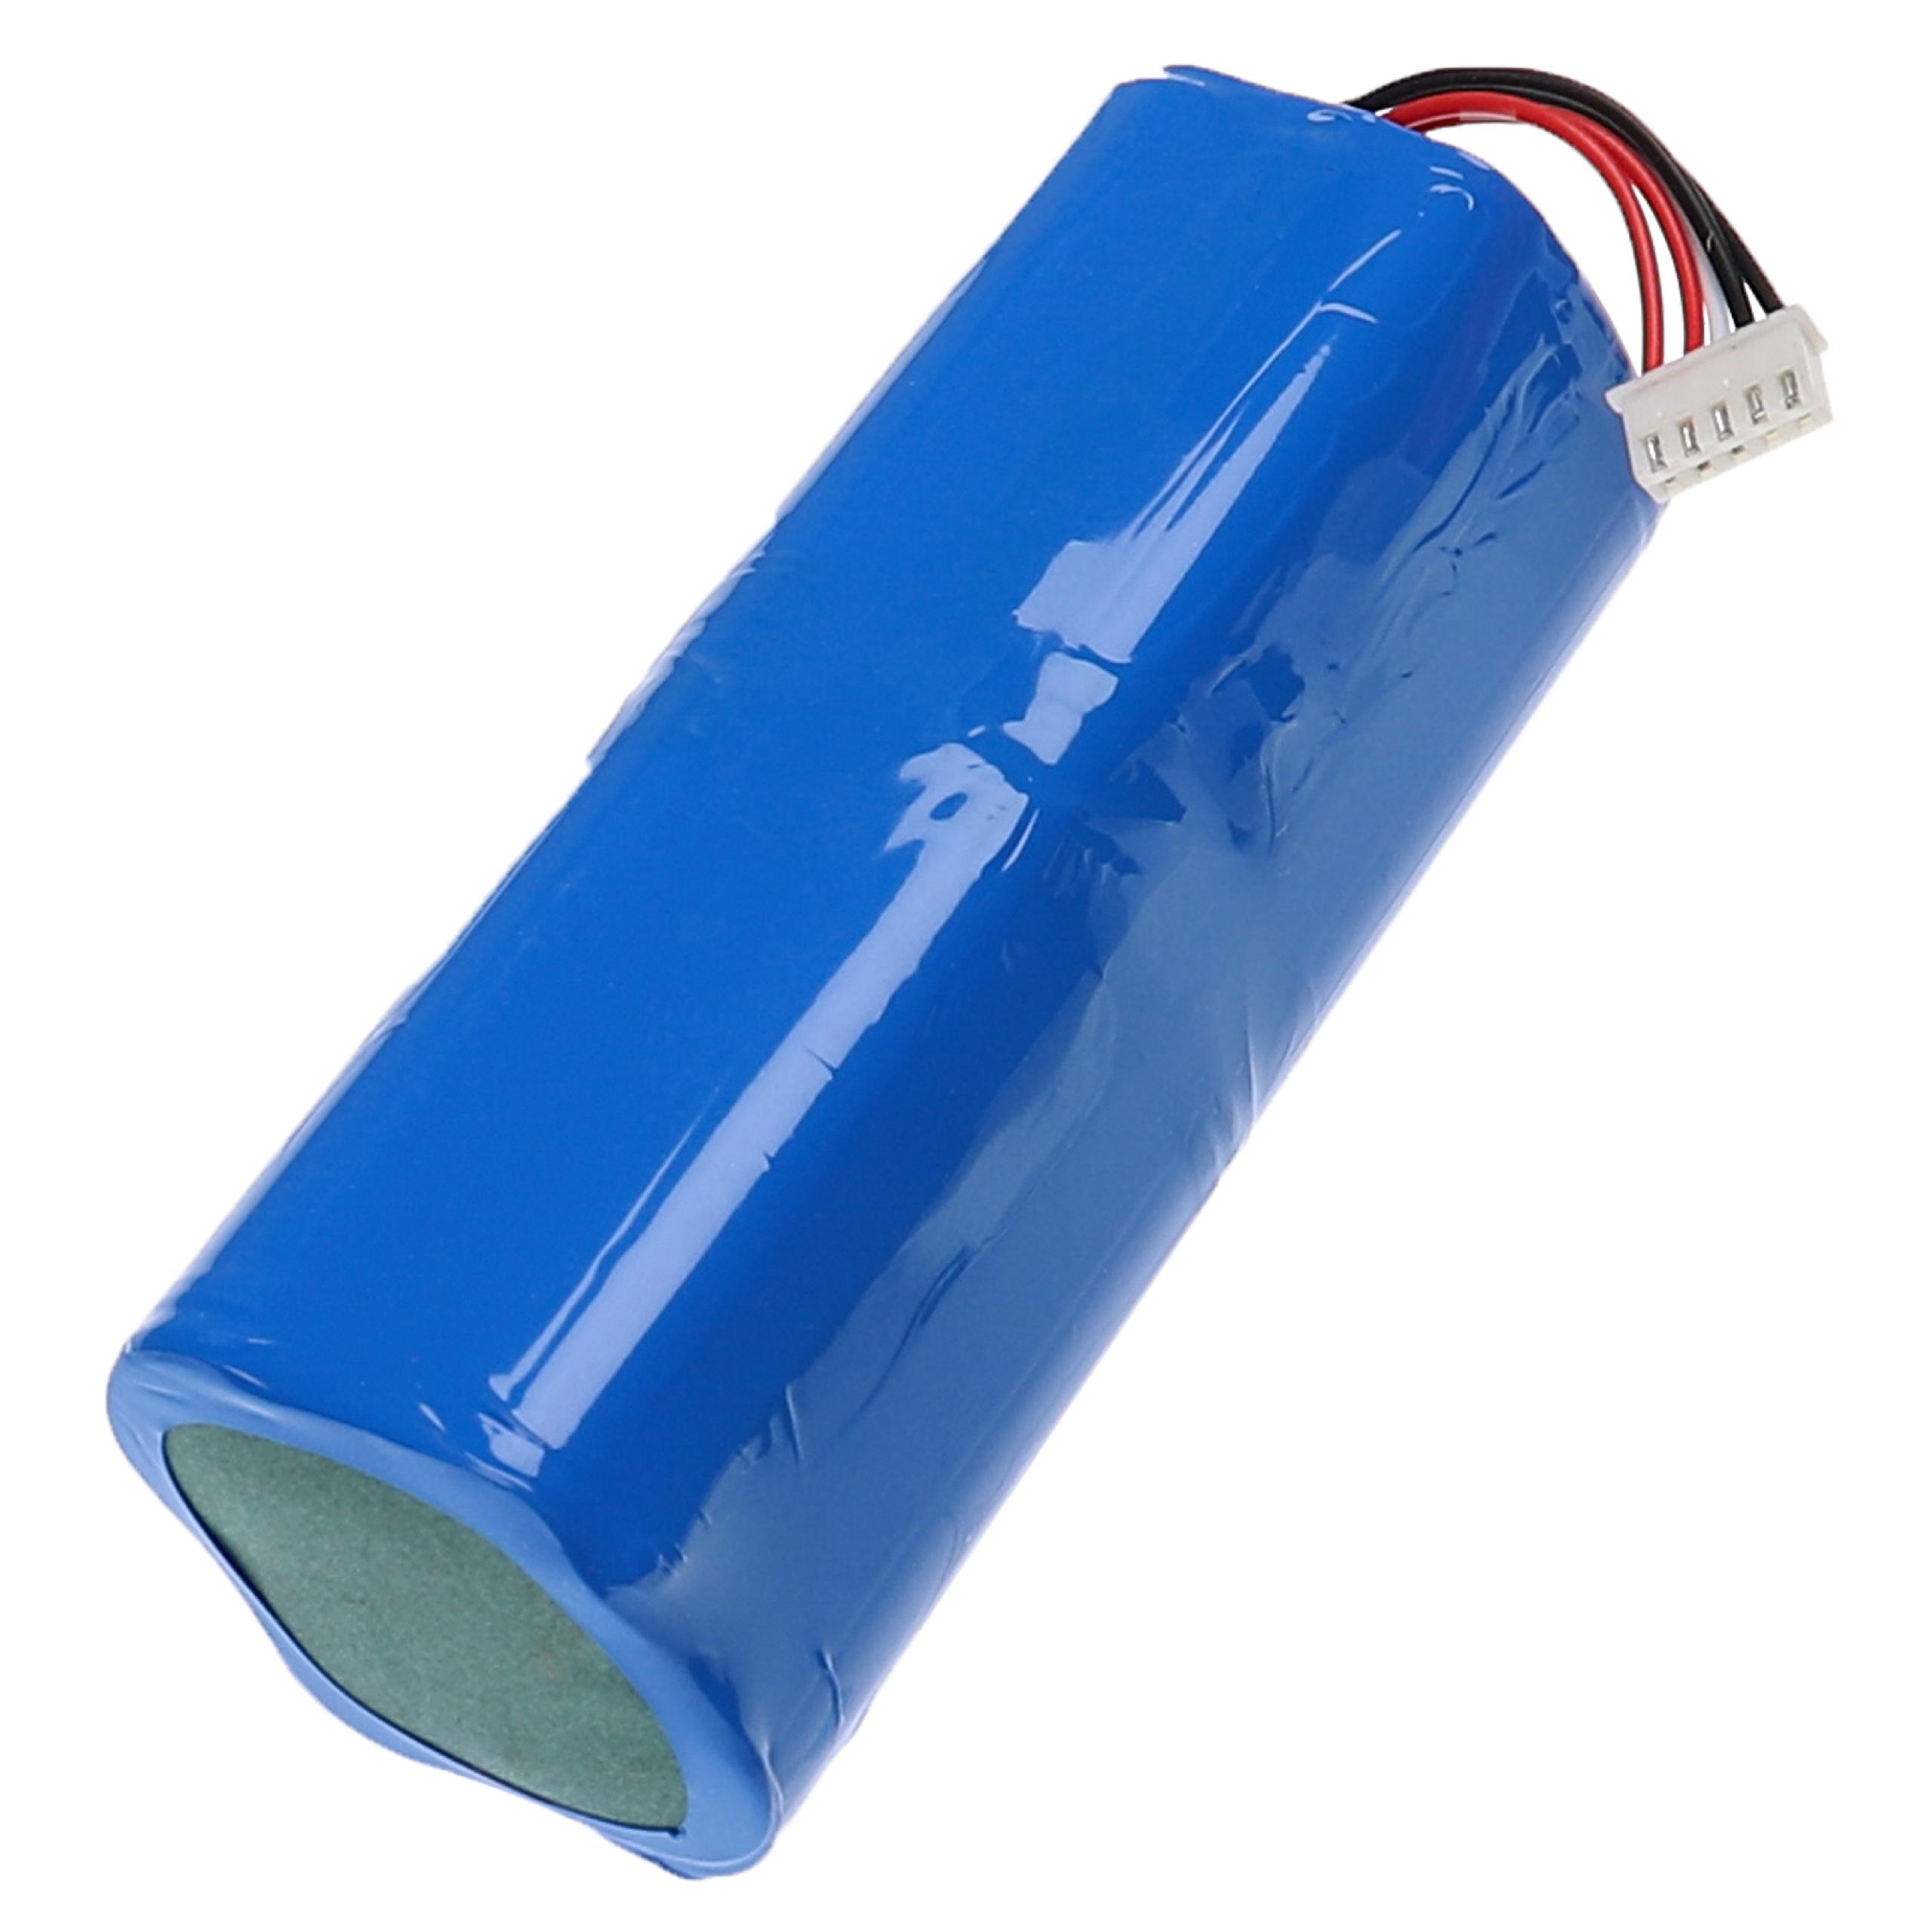 Batterie remplace Ecovacs 201-1913-4200, 201-1913-4201 pour robot aspirateur - 6800mAh 14,4V Li-ion